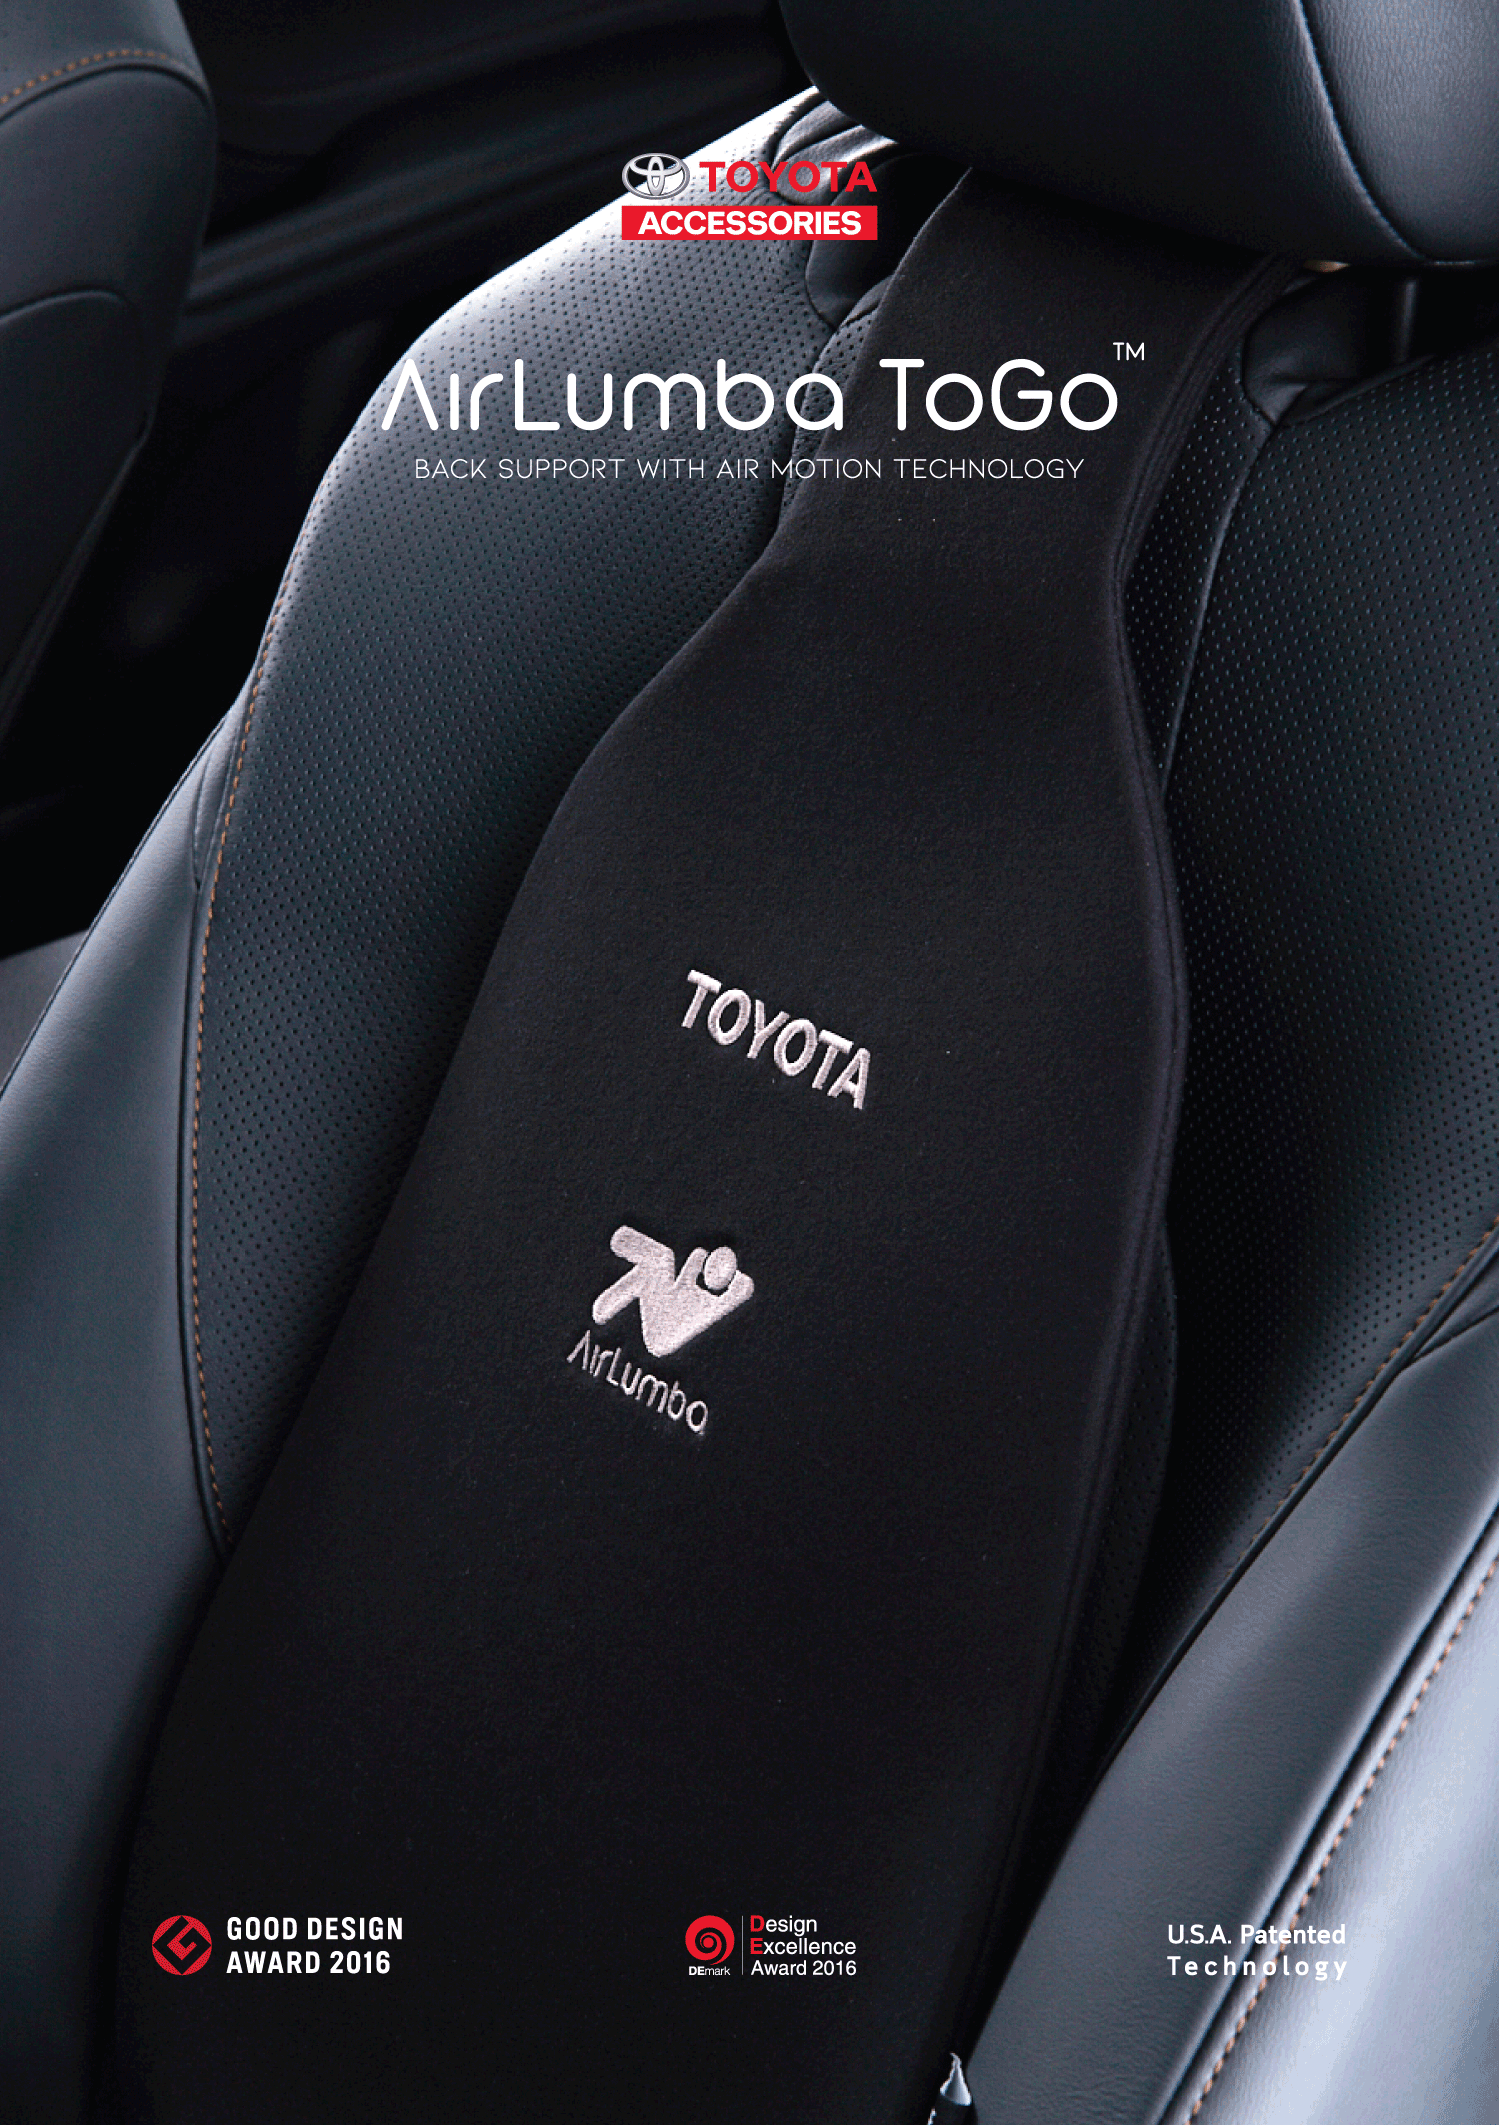 ( ราคาถูกกว่าศูนย์!!! ) Toyota Airlumba ToGo [แอร์ลัมบาร์ ทู โก] เบาะรองหลังเพื่อสุขภาพ Support ช่องว่างระหว่างหลังกับเบาะ ลดอาการเมื่อยล้าขณะขับขี่